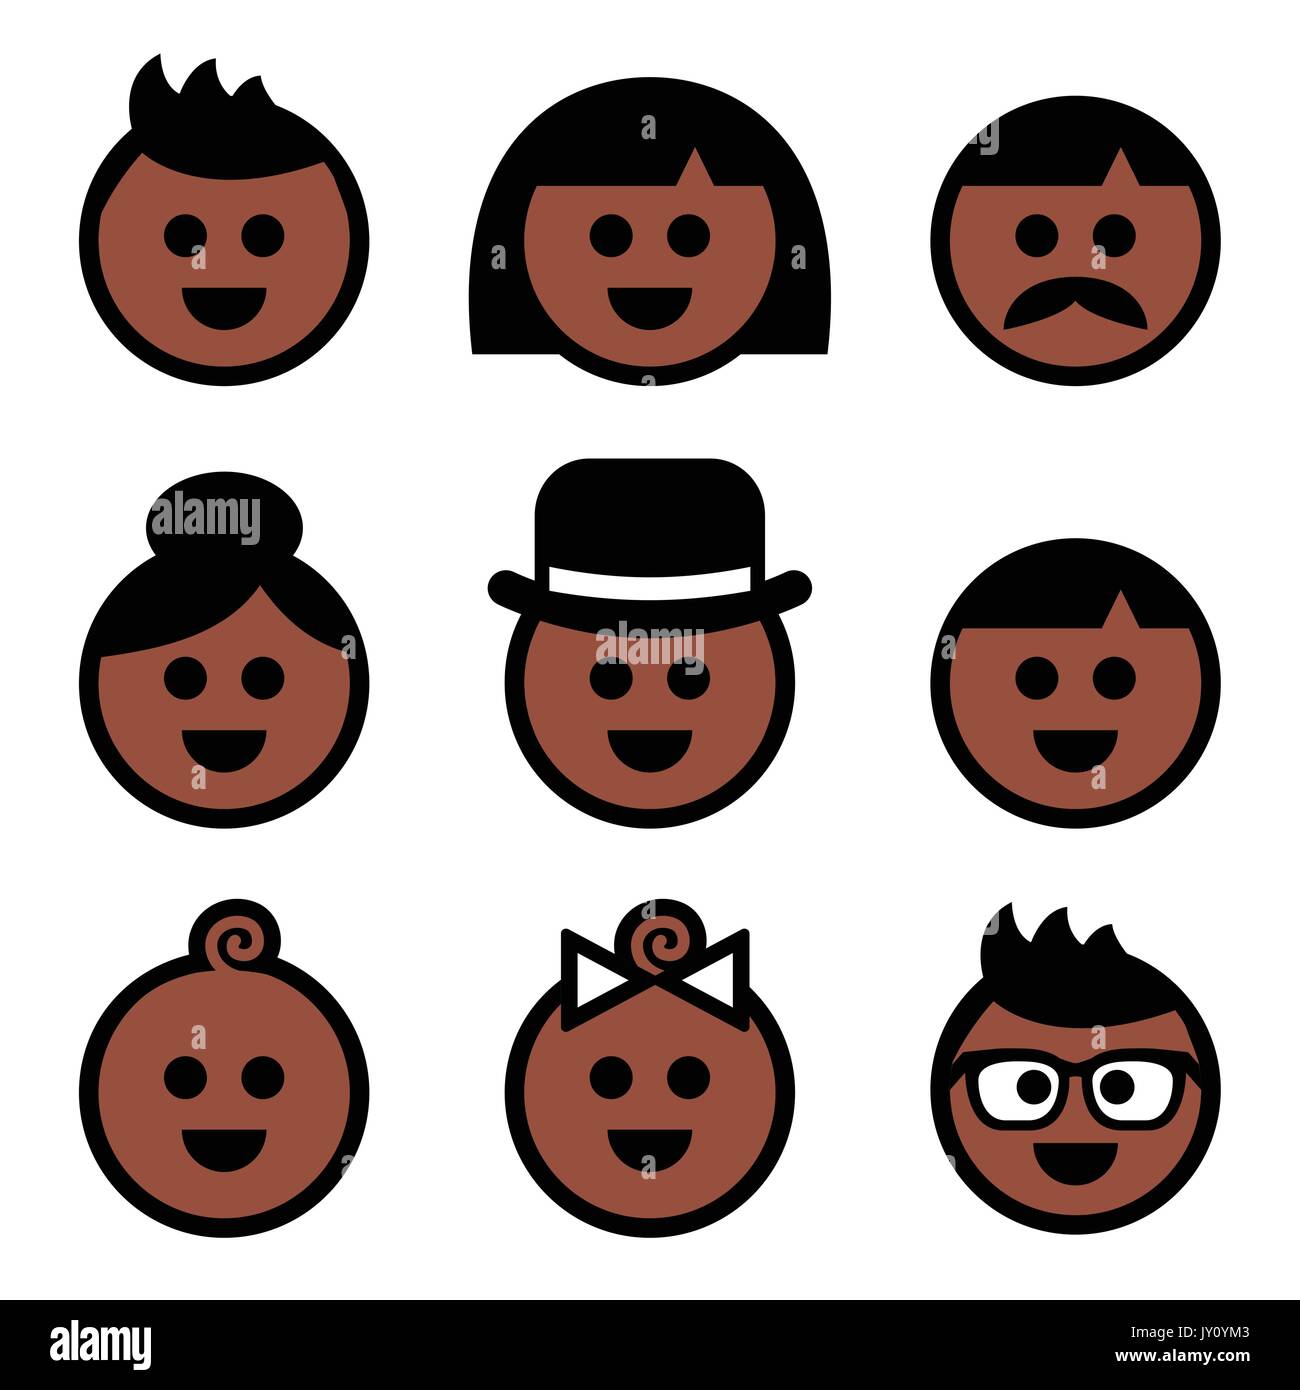 La couleur de peau sombre, brun icons set Vector icons set des visages des gens - teint sombre Illustration de Vecteur